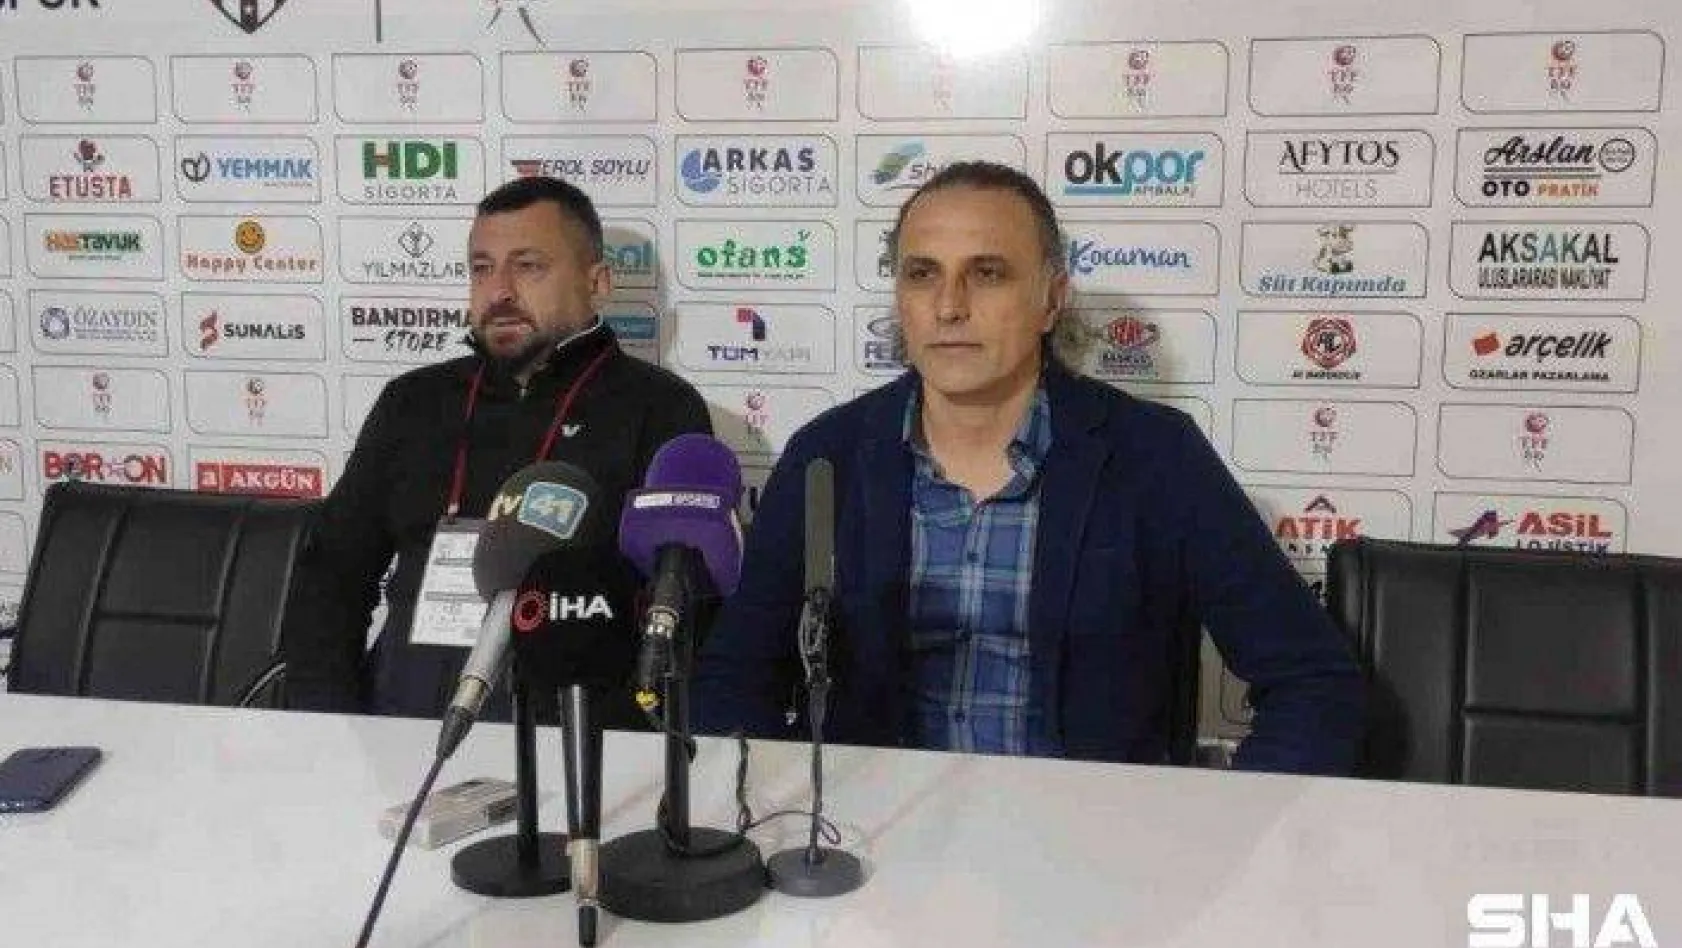 Bandırmaspor - Kocaelispor maçının ardından